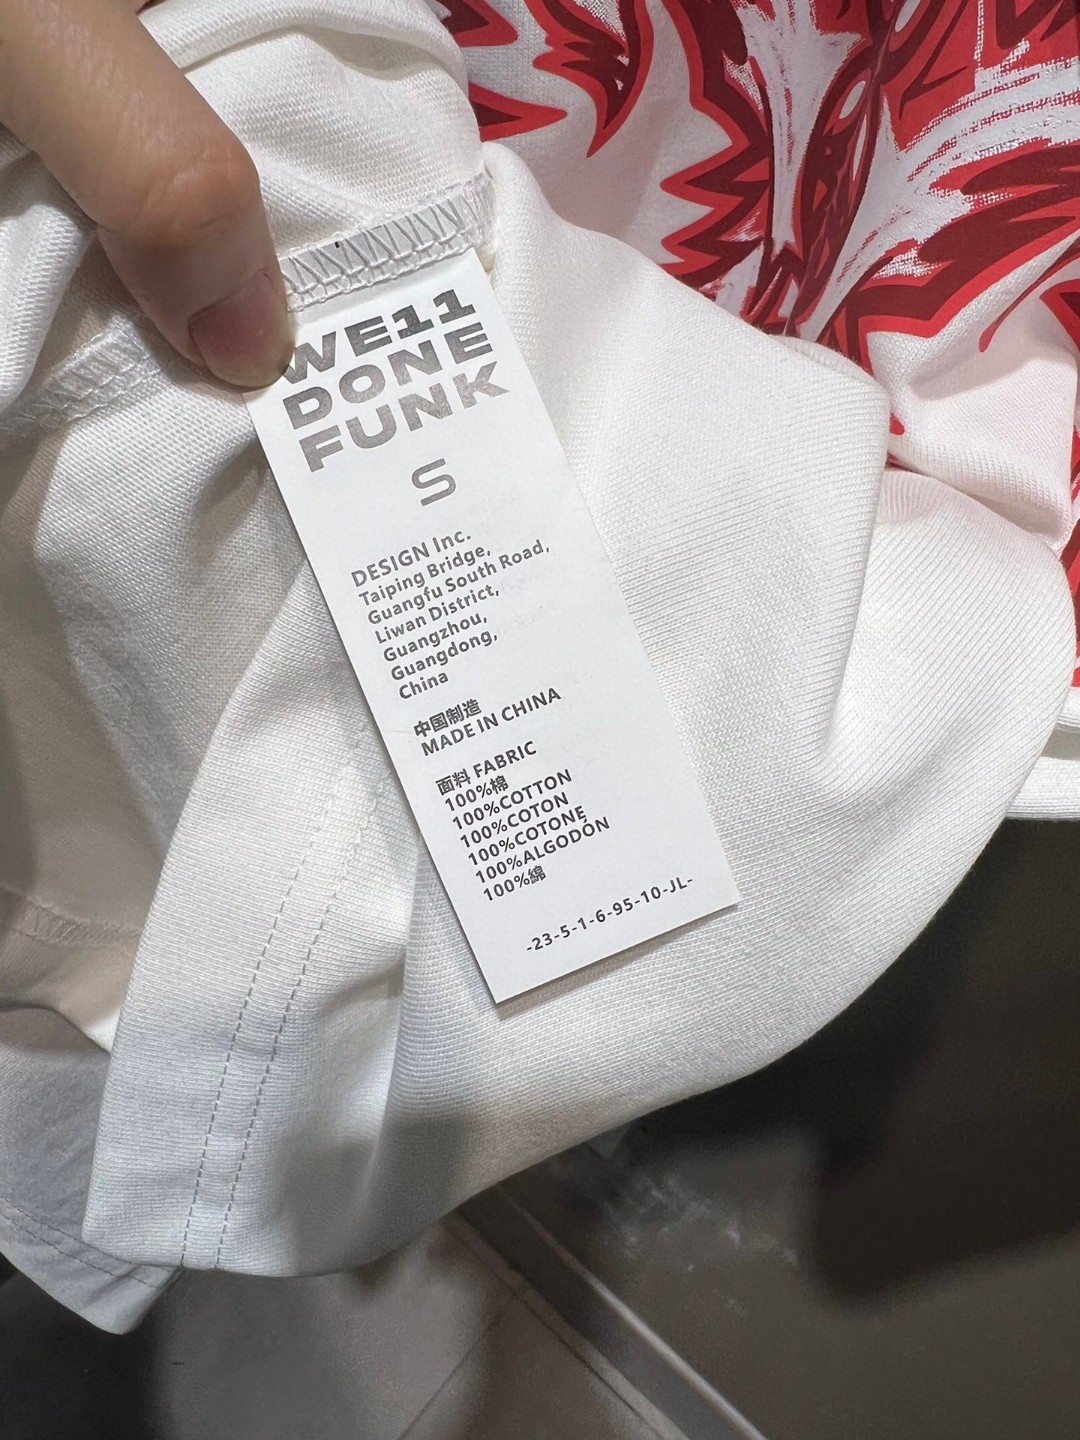 WE11DONE 限定セール低価 tシャツヘビーウェイトコピー 半袖 トップス 純綿 ファッション プリント 人気新作 2色可選_9